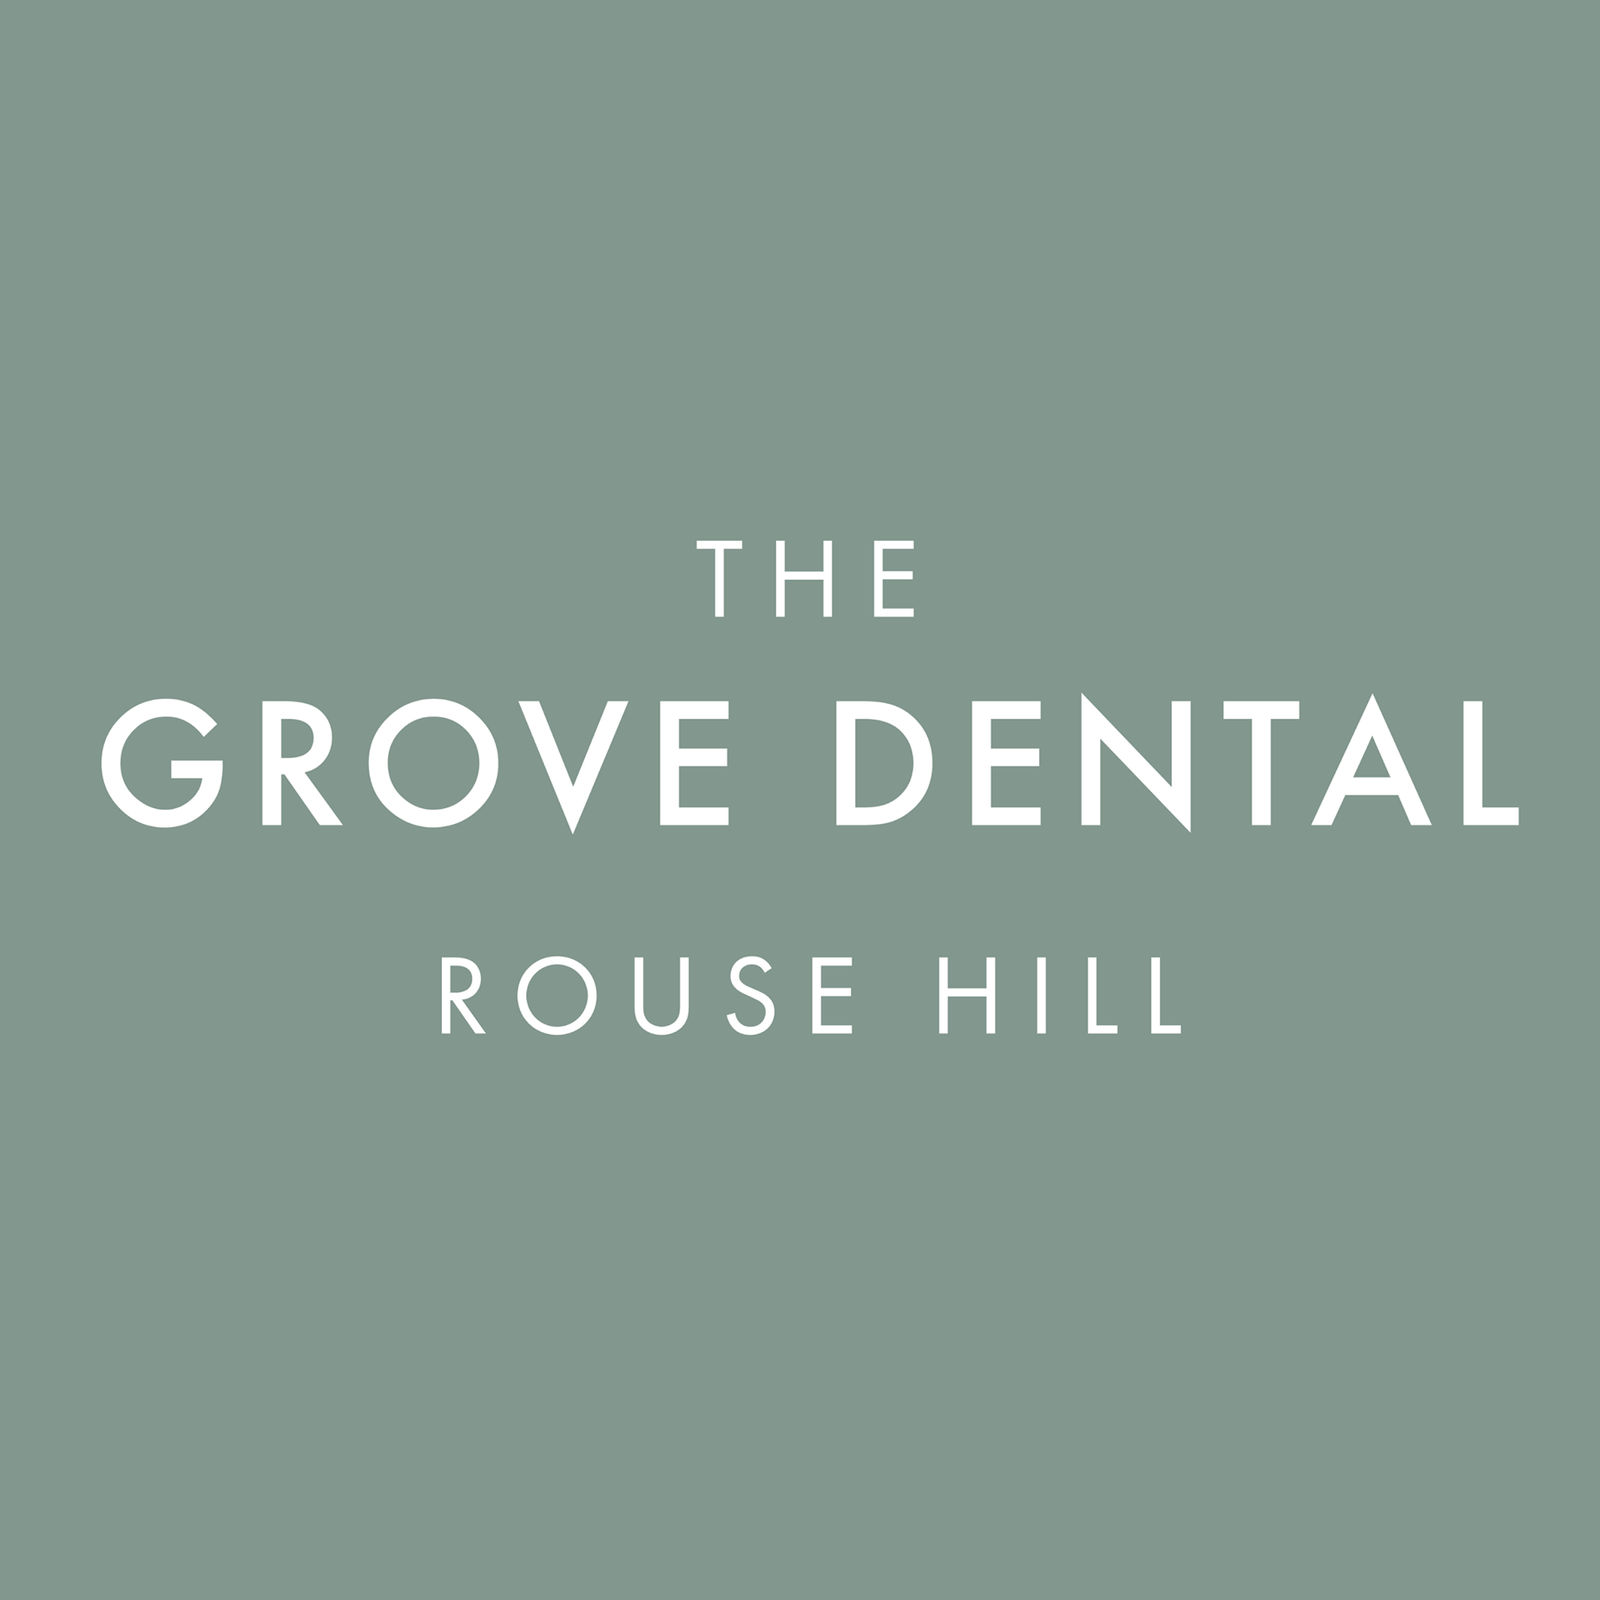 The Grove Dental